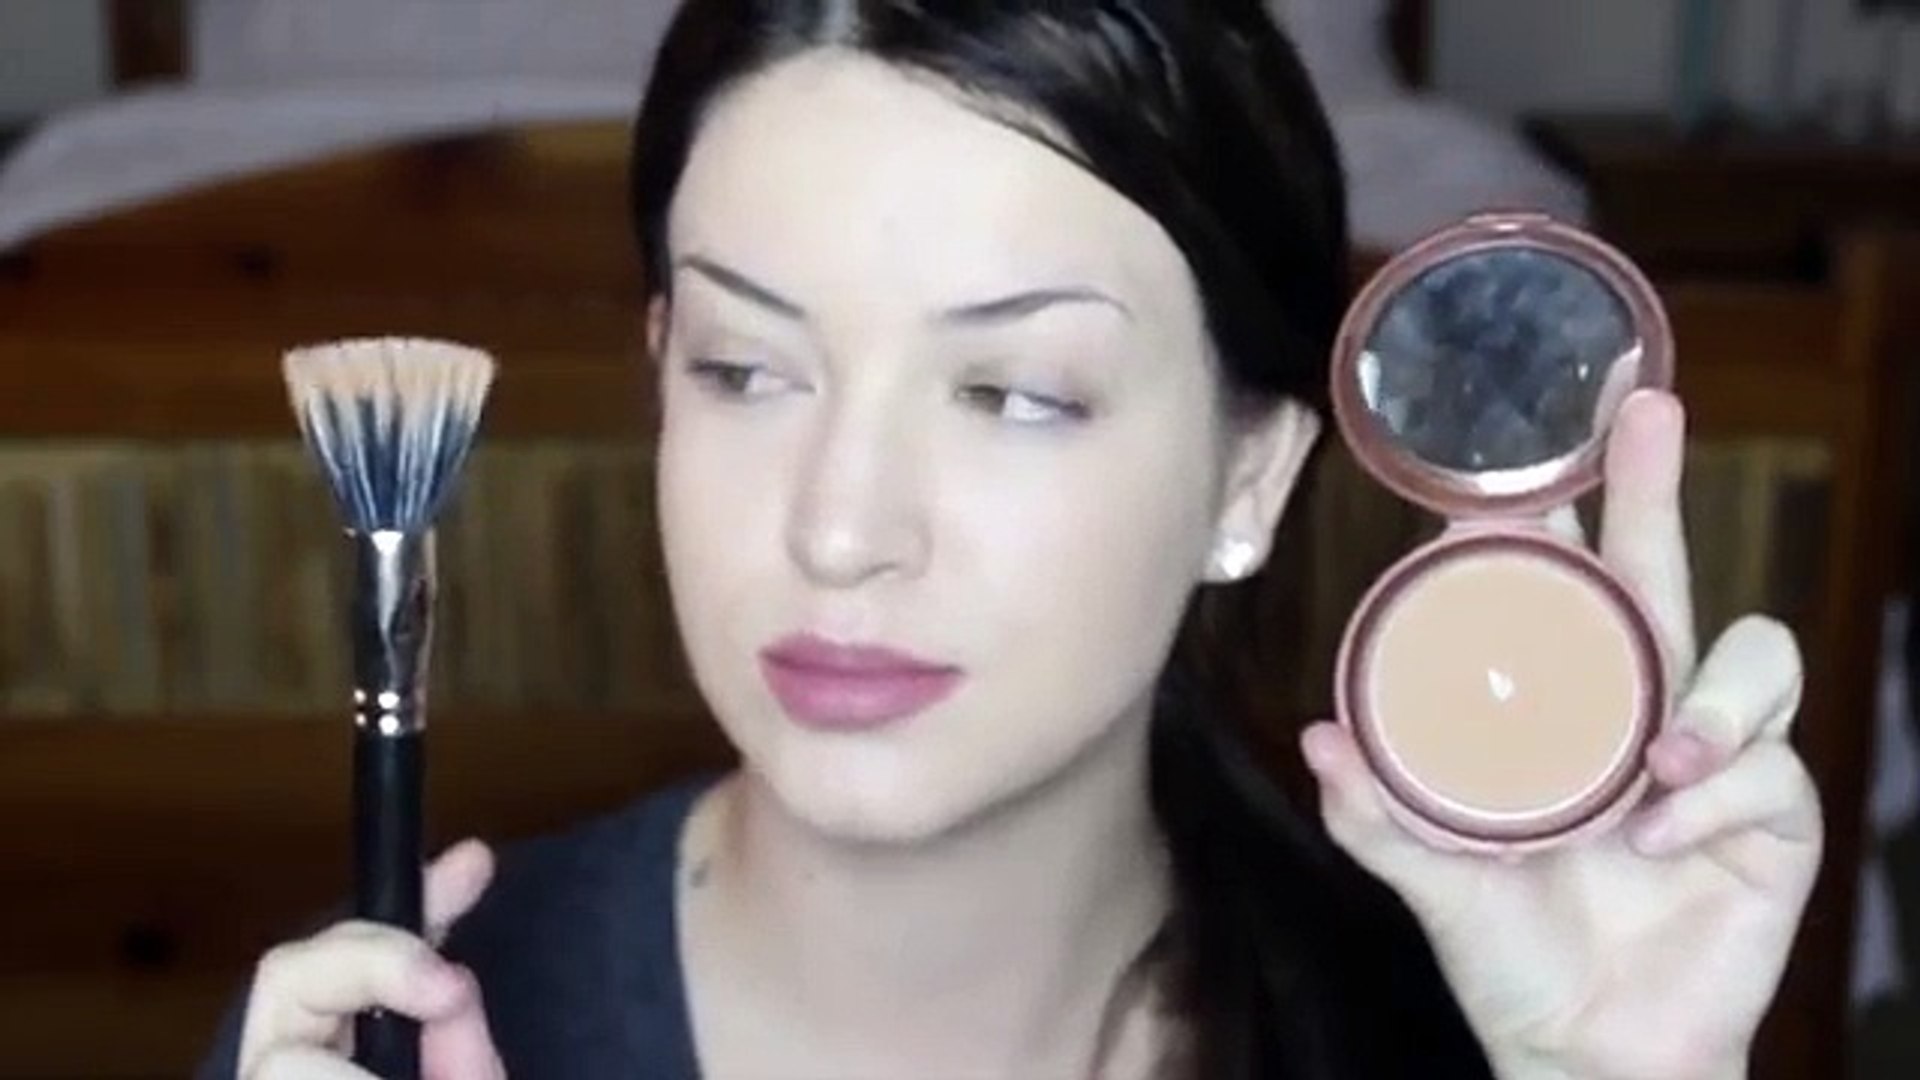 Makeup tutorial video | makeup tips for girls | makeup face & eyes 2017